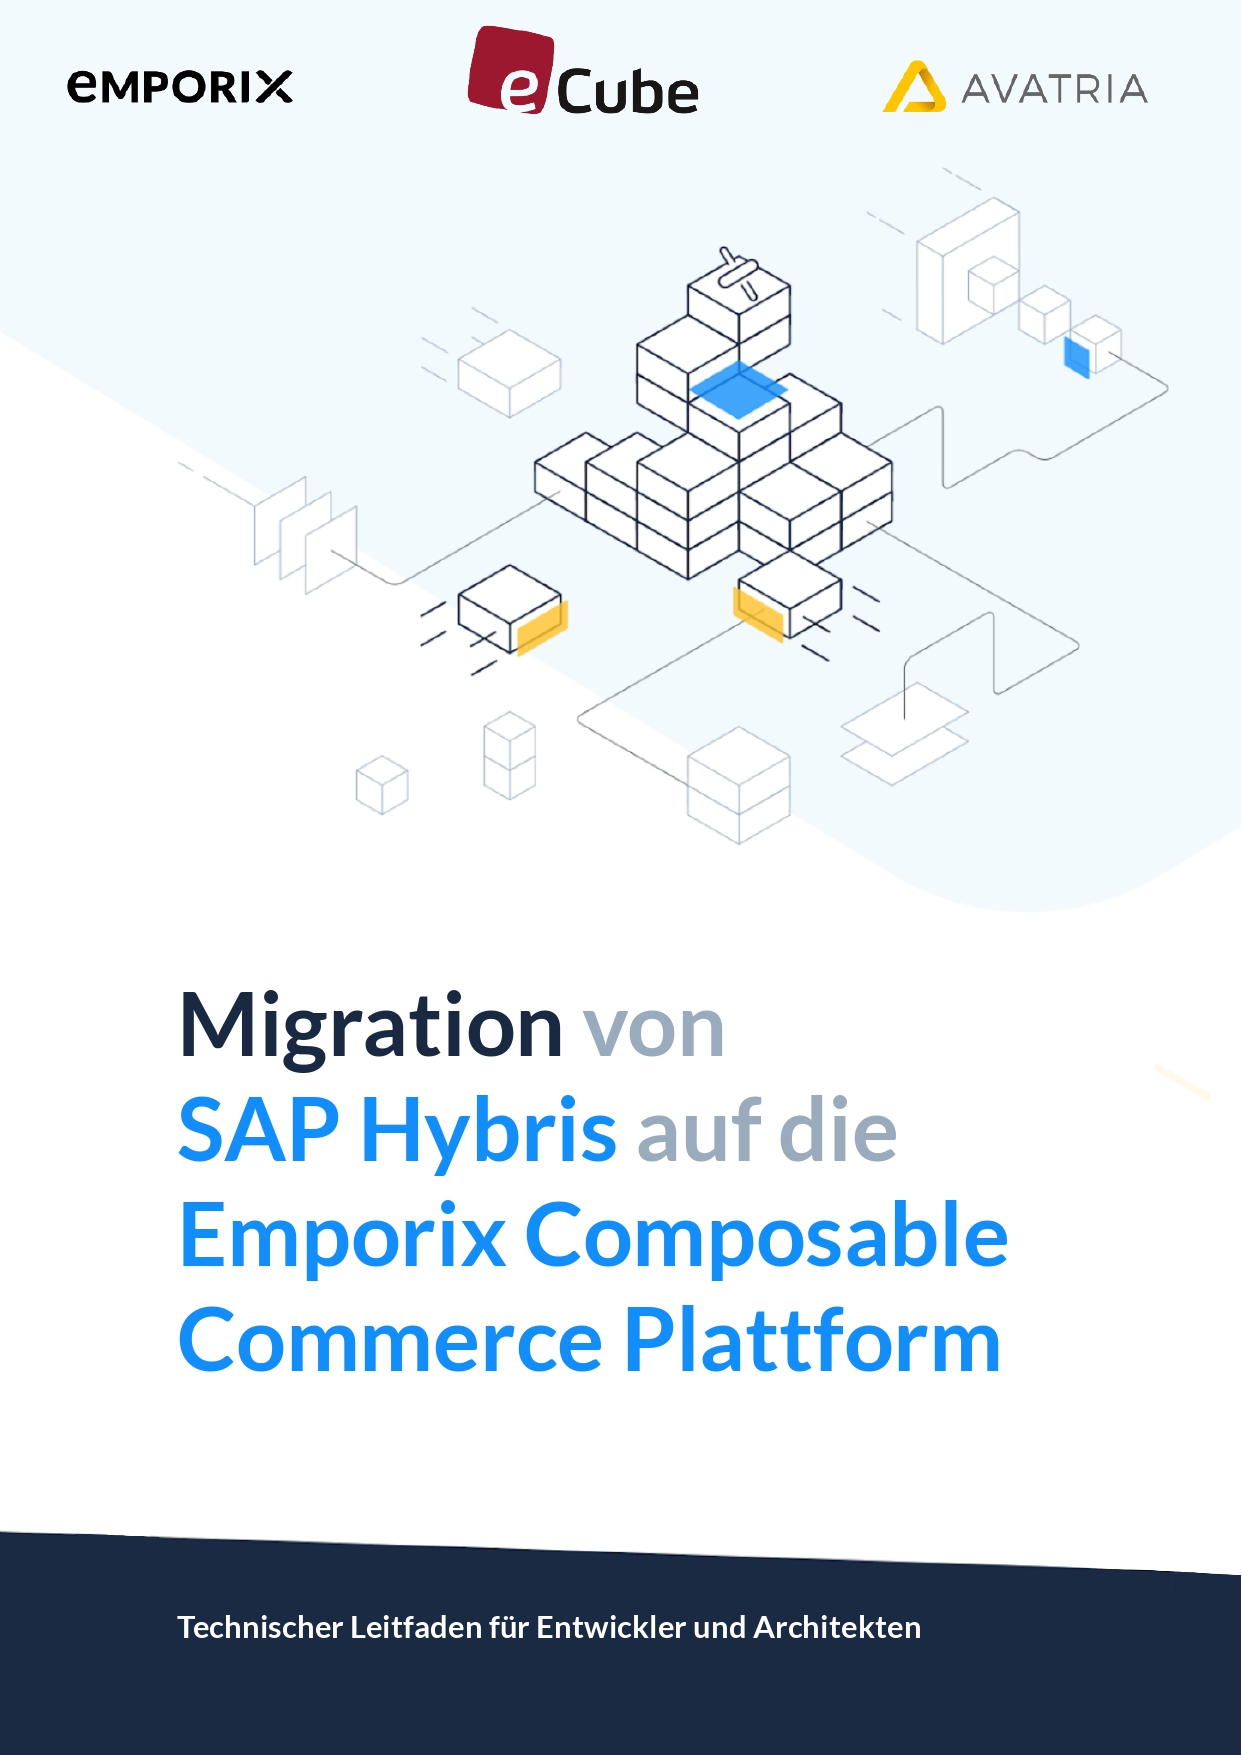 Emporix_Migration_von_SAP_Hybris_auf_die_Emporix_Composable_Commerce_Plattform-1_page-0001